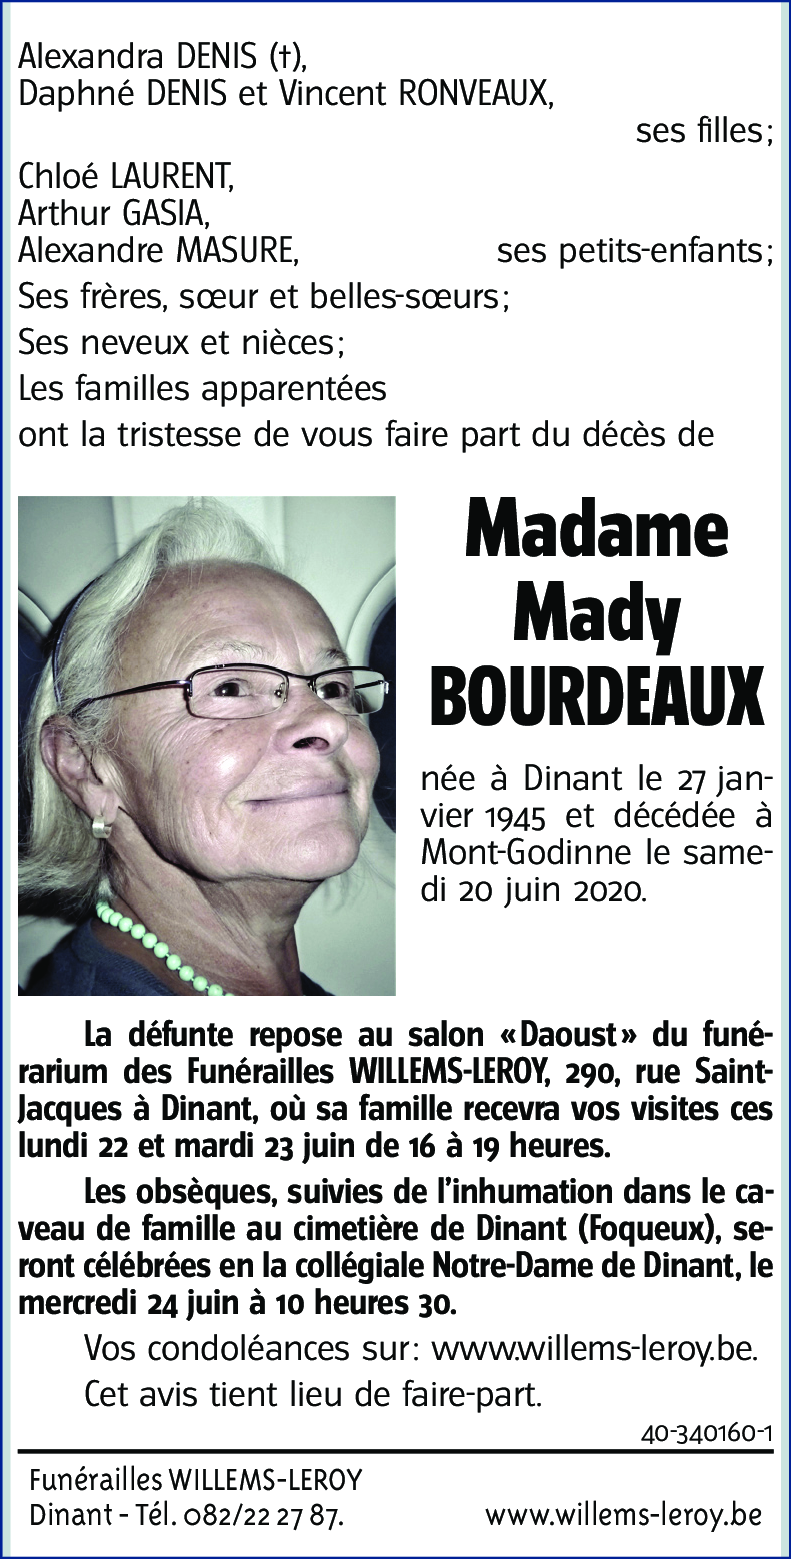 Marie-Madeleine BOURDEAUX